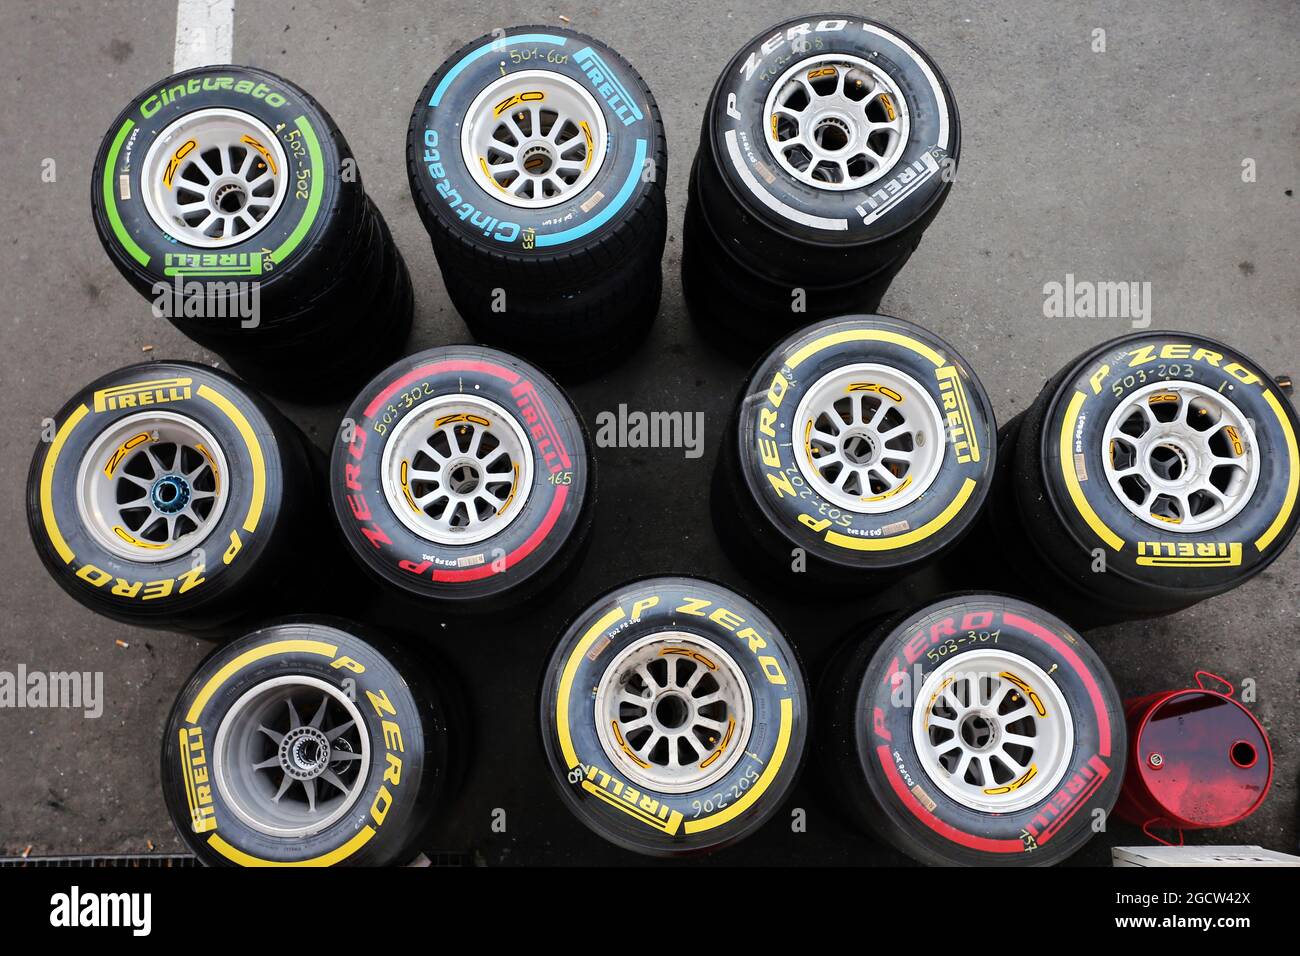 Pneus Pirelli. Test de Formule 1, jour 4, dimanche 1er mars 2015. Barcelone, Espagne. Banque D'Images